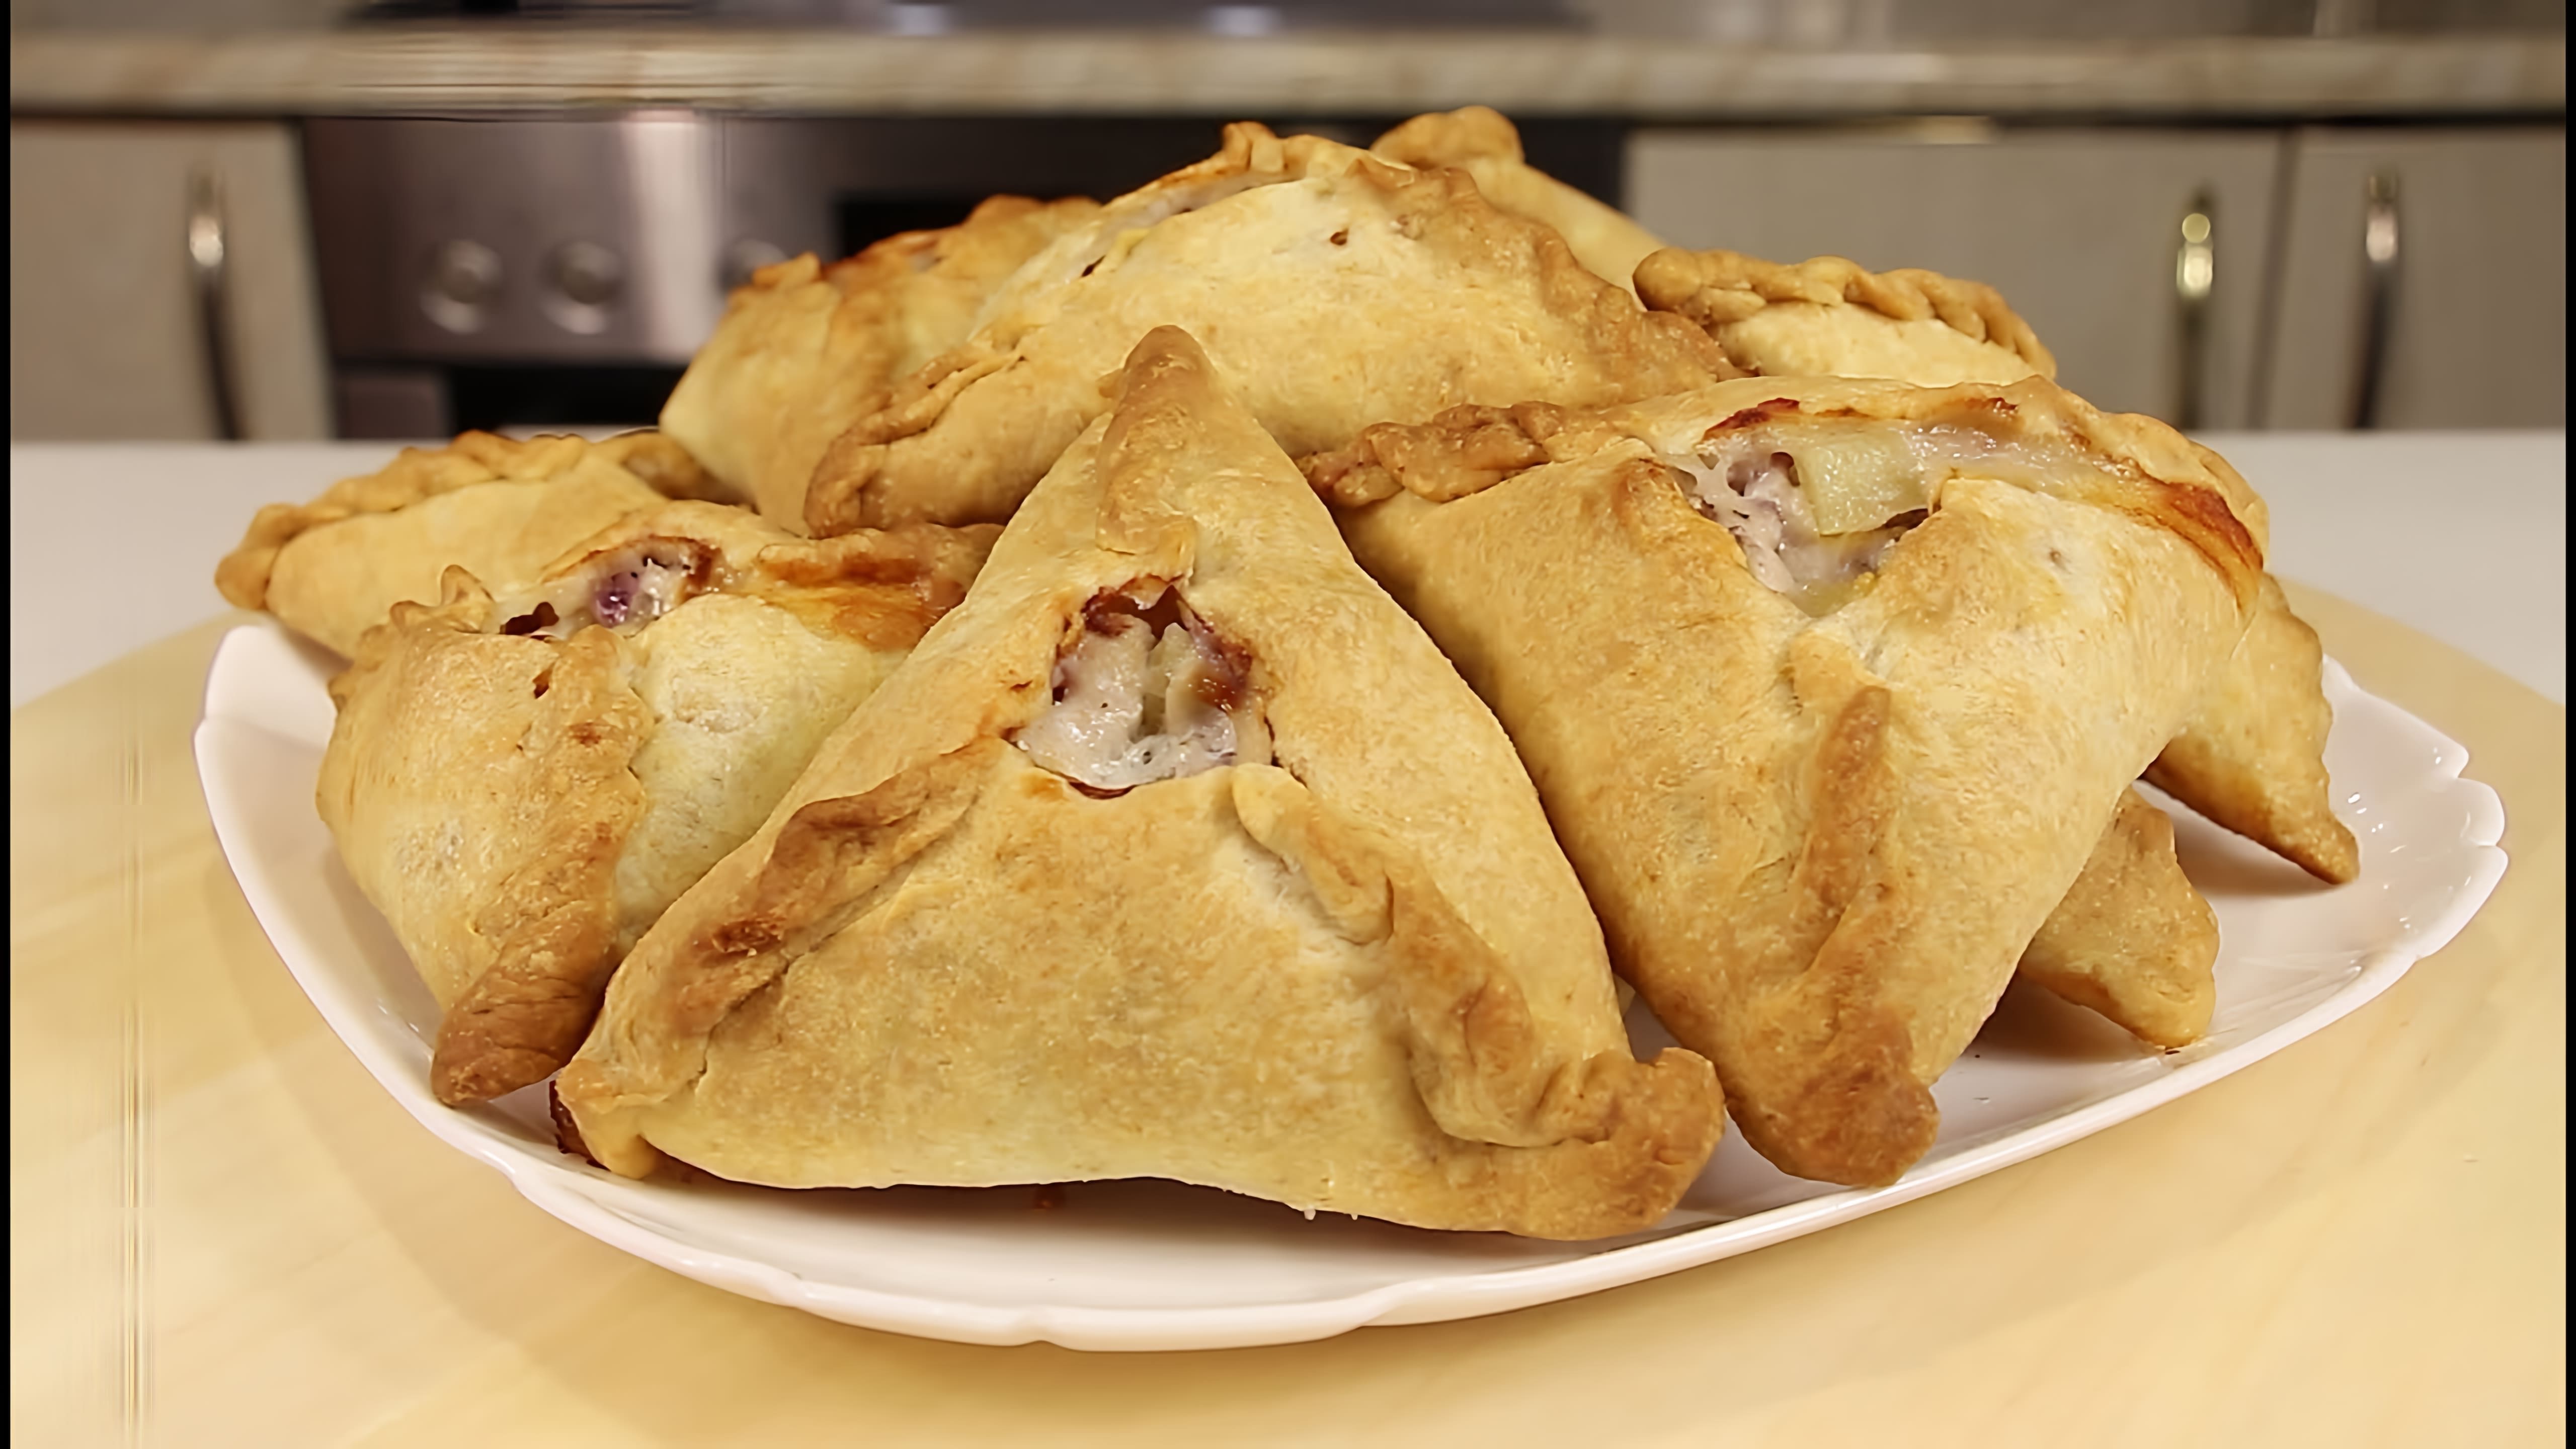 Видео рецепт курников, которые представляют собой русские мясные пироги с курицей, картофелем и луком, завернутые в мягкое тесто